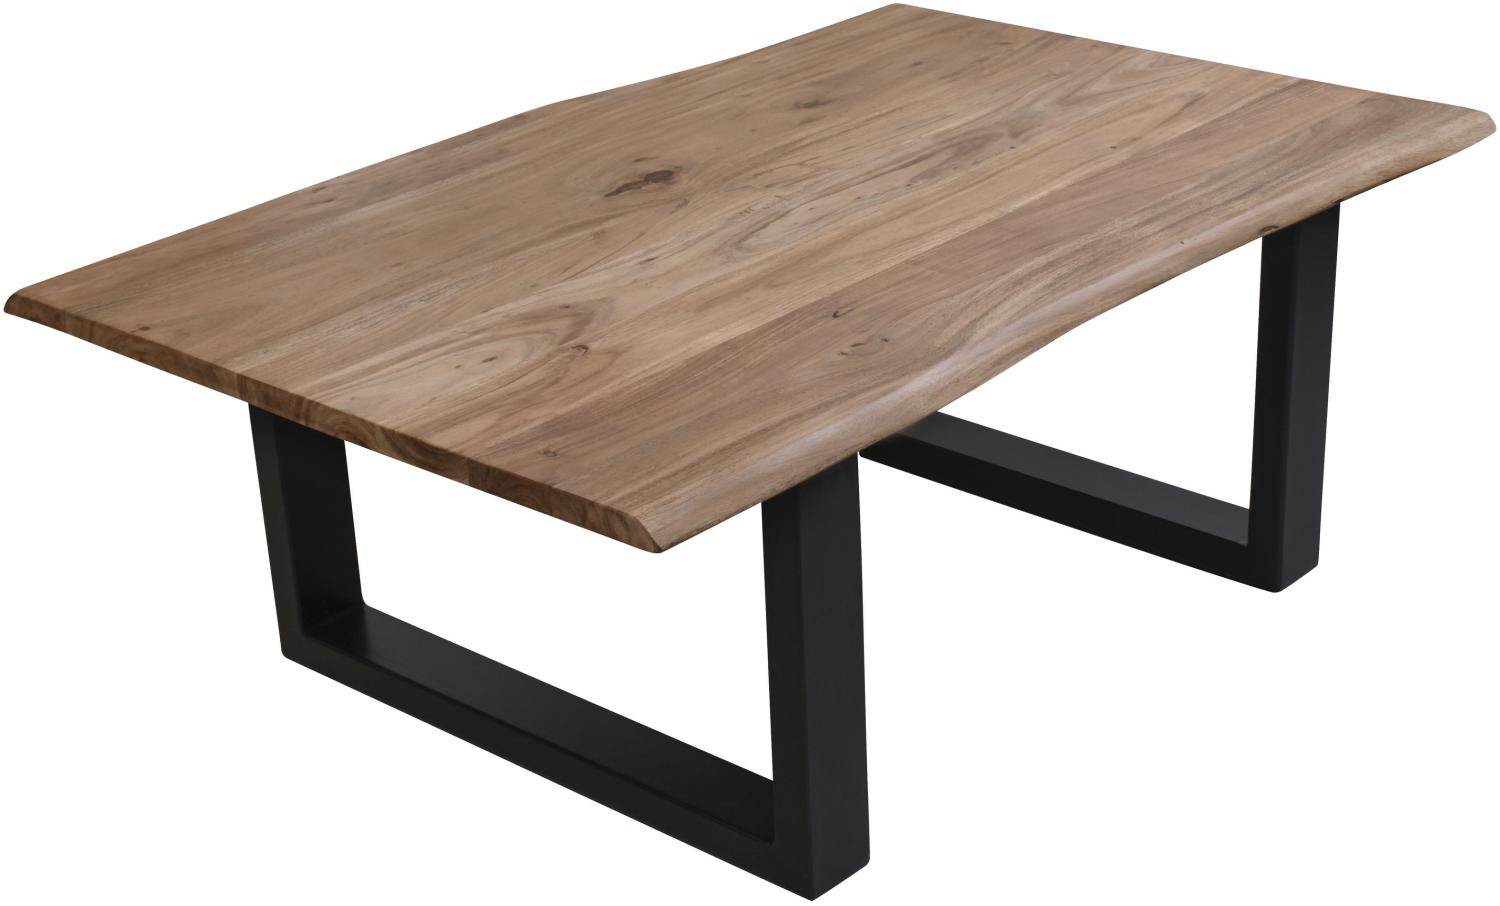 Couchtisch 120x80 Akazie Beistelltisch Sofatisch Holz Wohnzimmertisch Tisch Bild 1